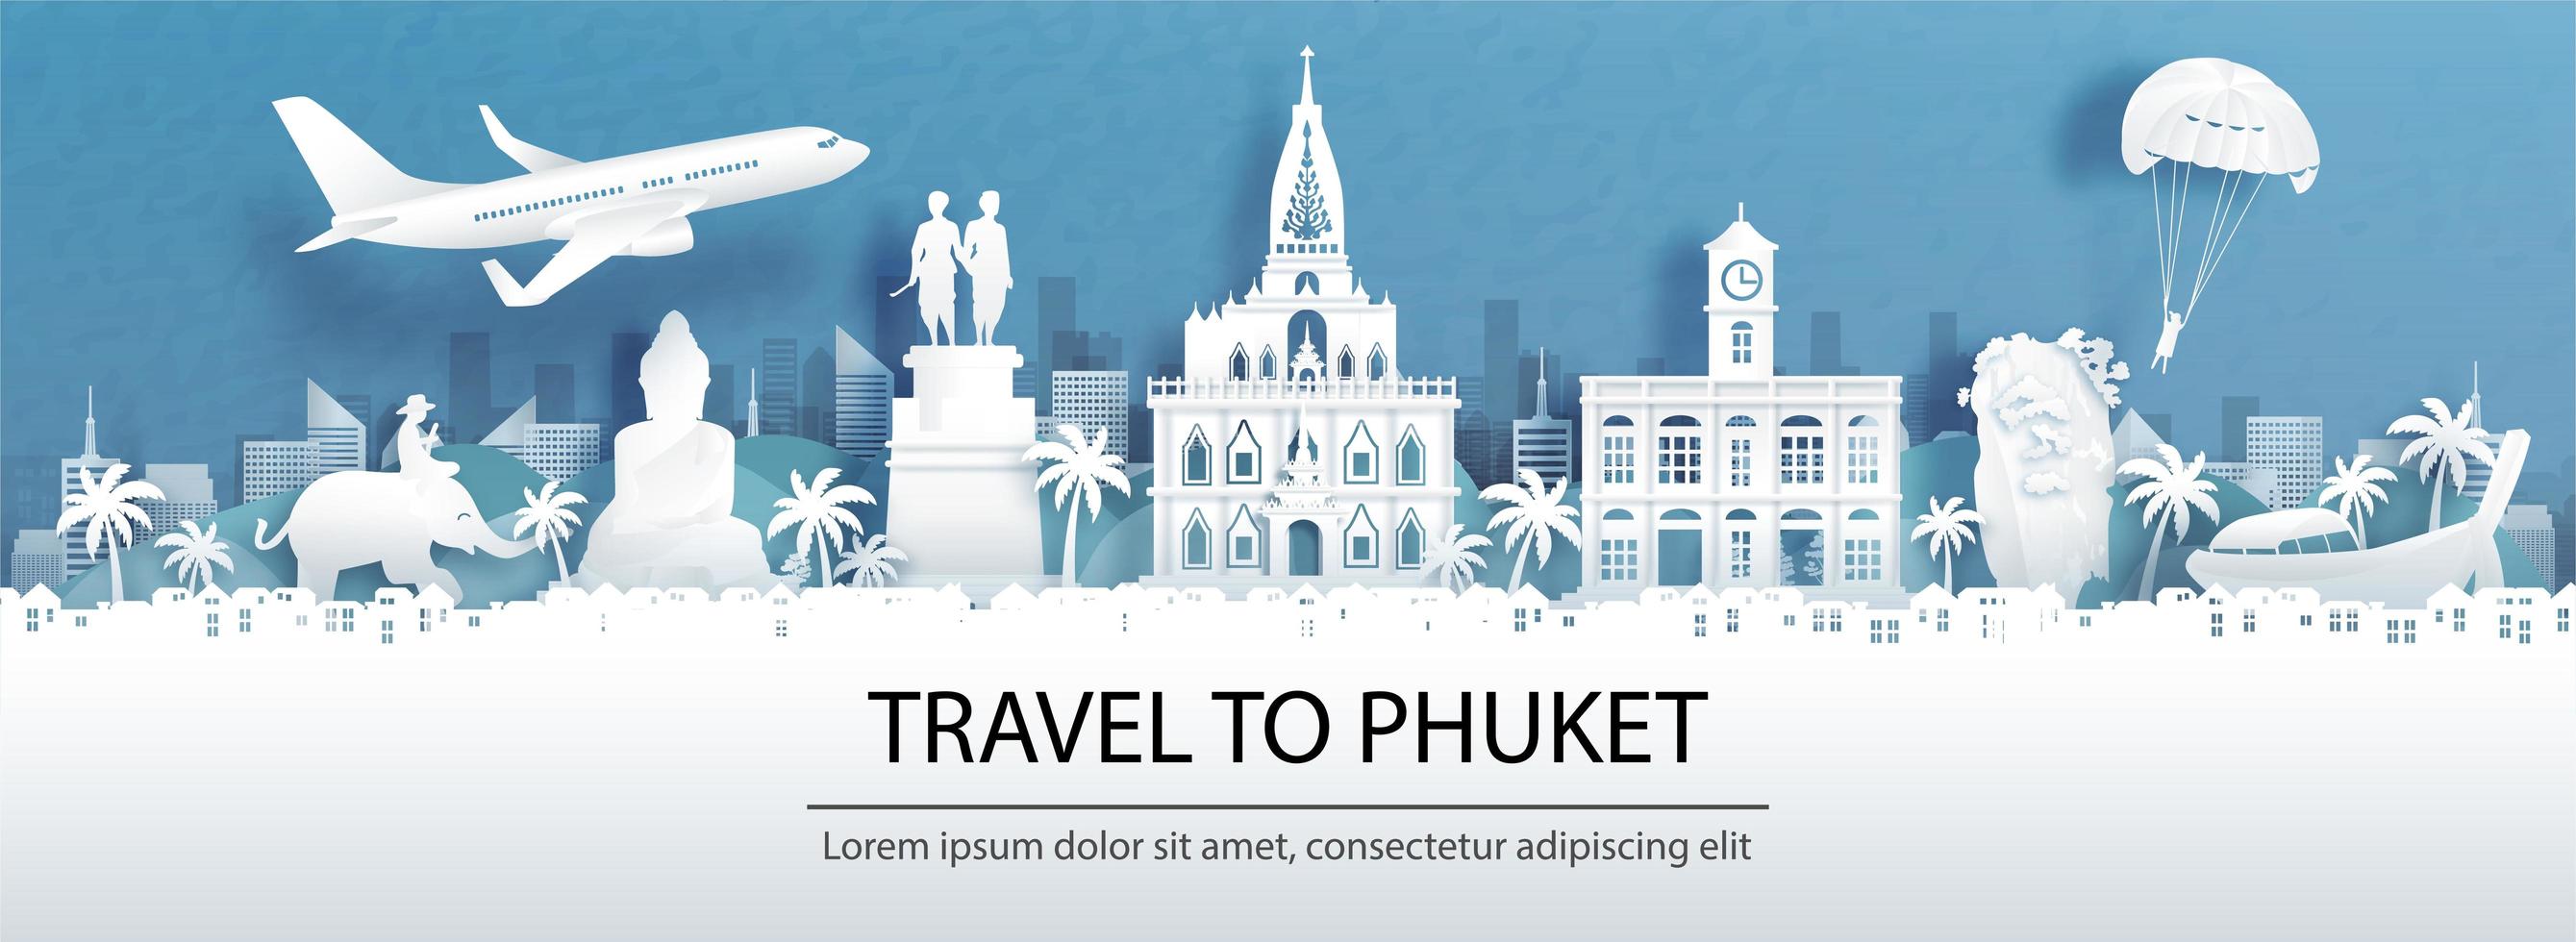 pubblicità di viaggio per phuket, Tailandia con vista panoramica vettore